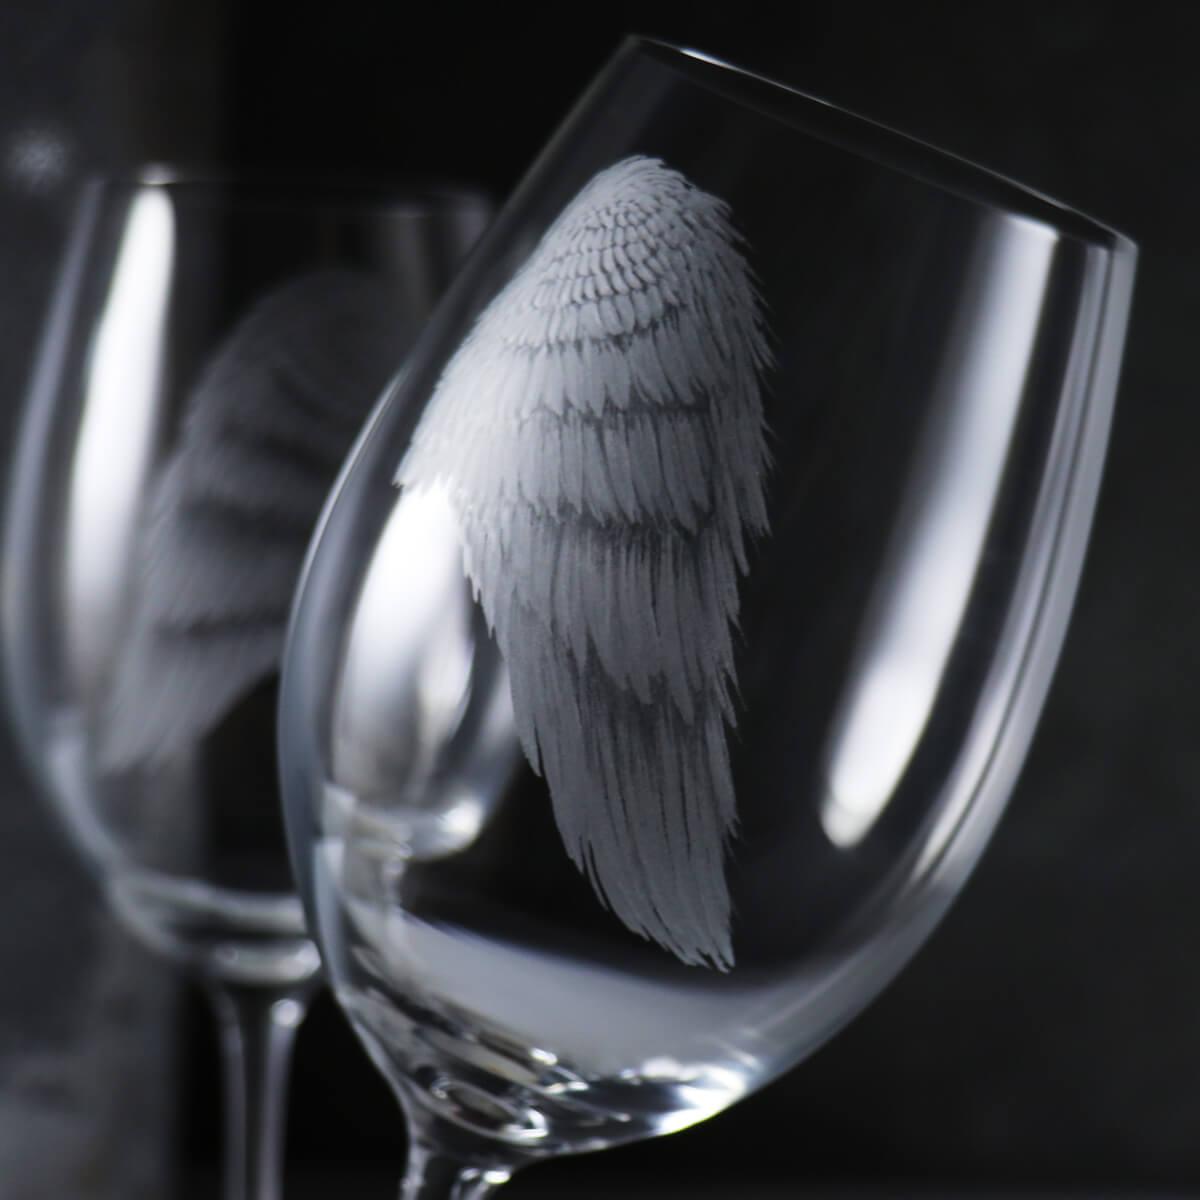 (一對價)470cc 曼谷【Lucaris天使的祝福】天使翅膀 守護羽翼 無鉛水晶對杯 紅酒杯 - MSA玻璃雕刻